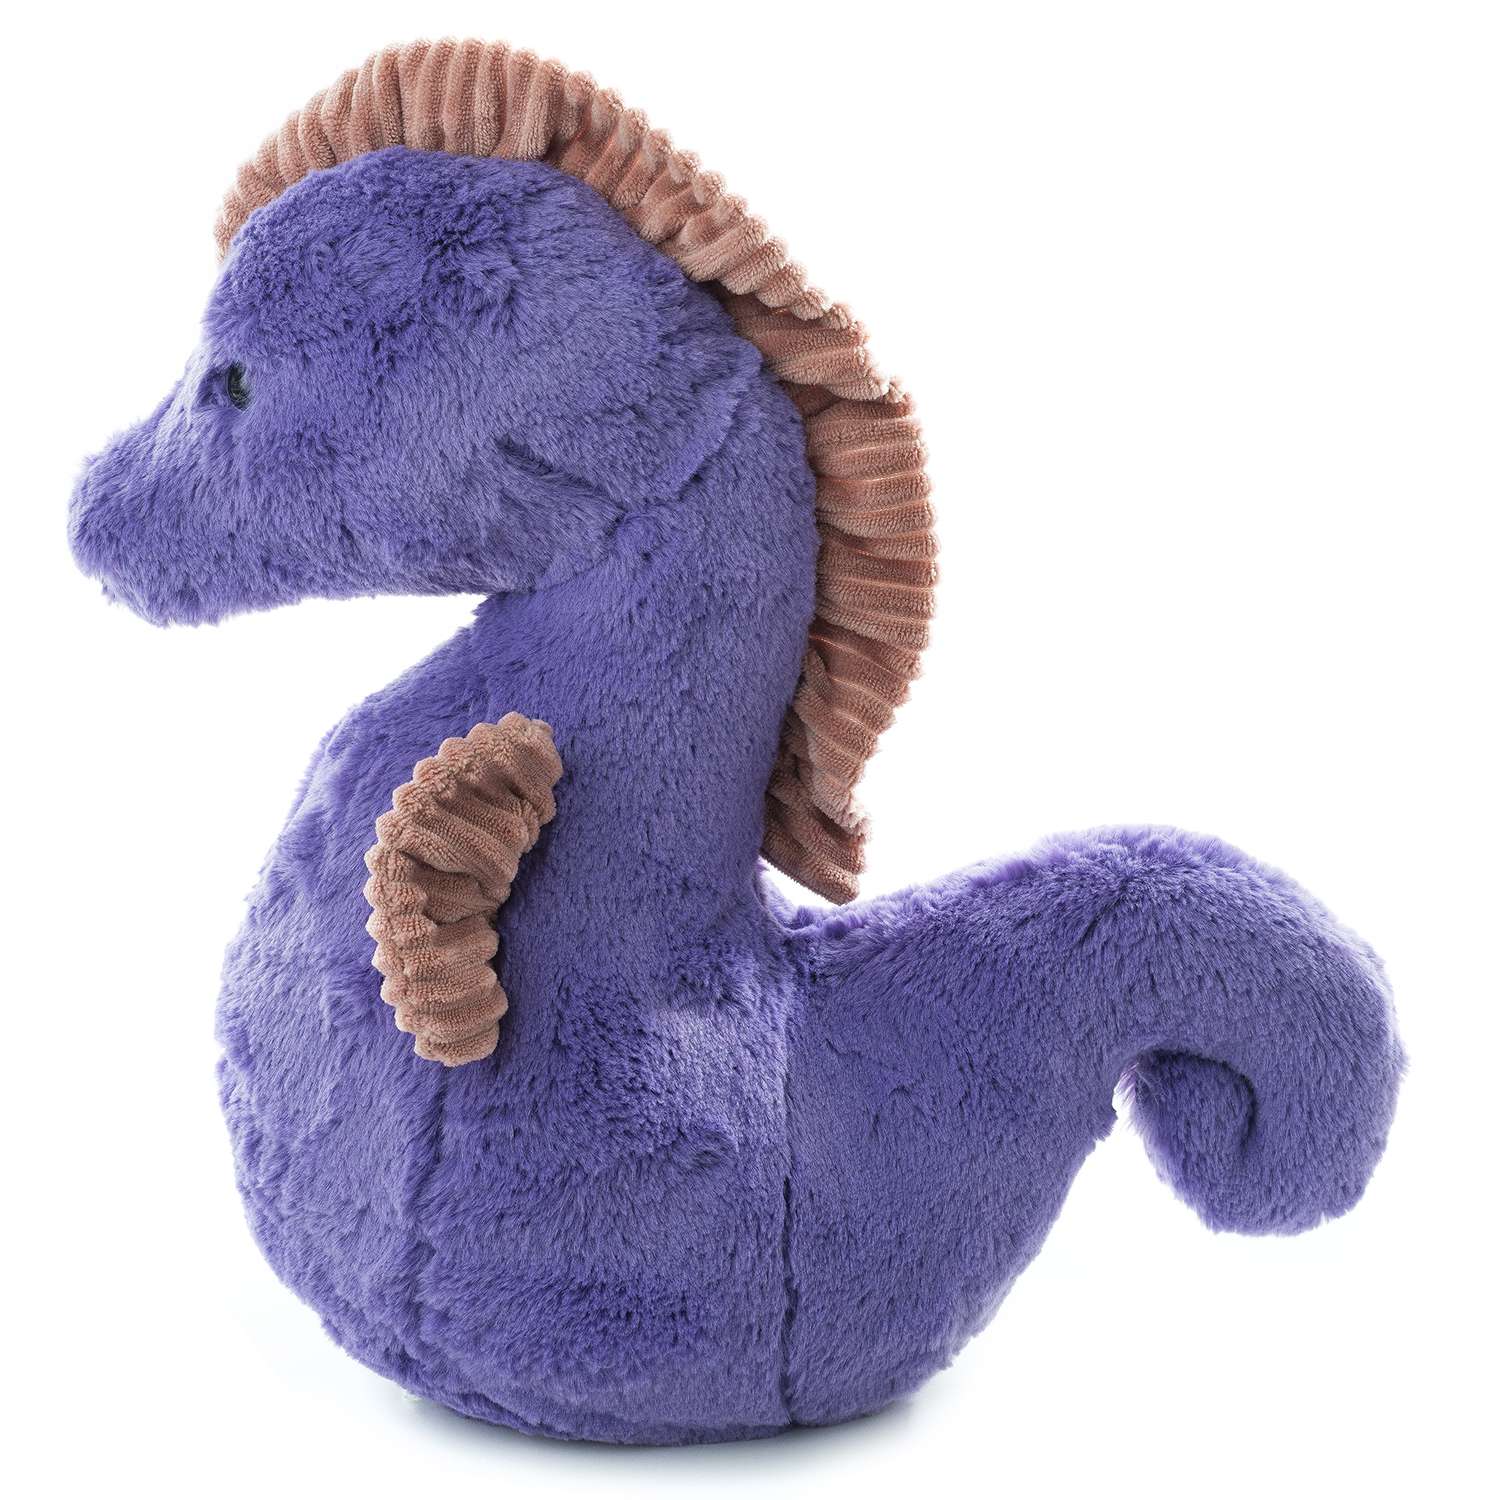 Игрушка мягконабивная Tallula Морской конёк 40 см фиолетовый - фото 3